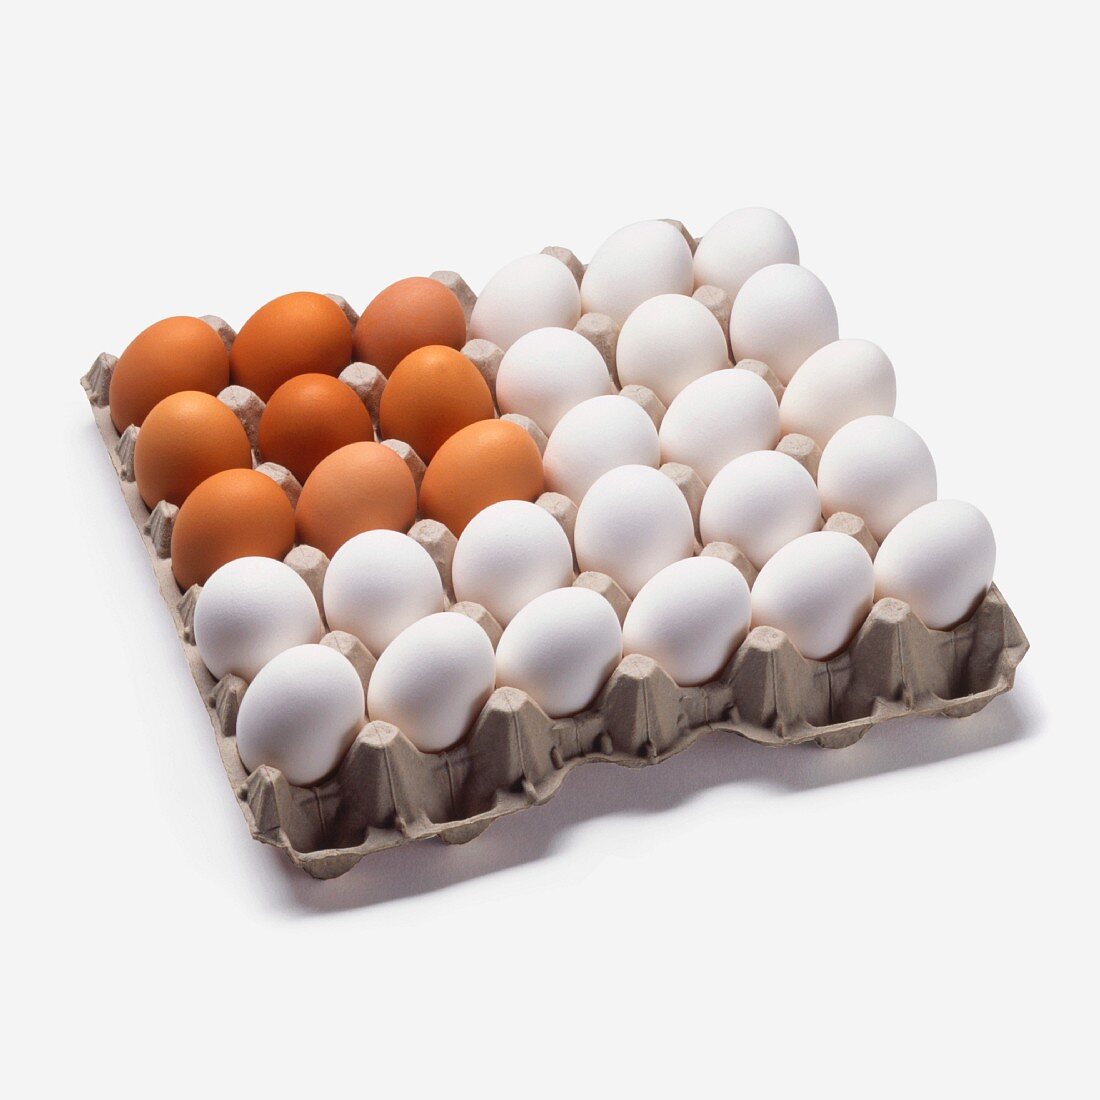 Braune und weiße Eier im Karton